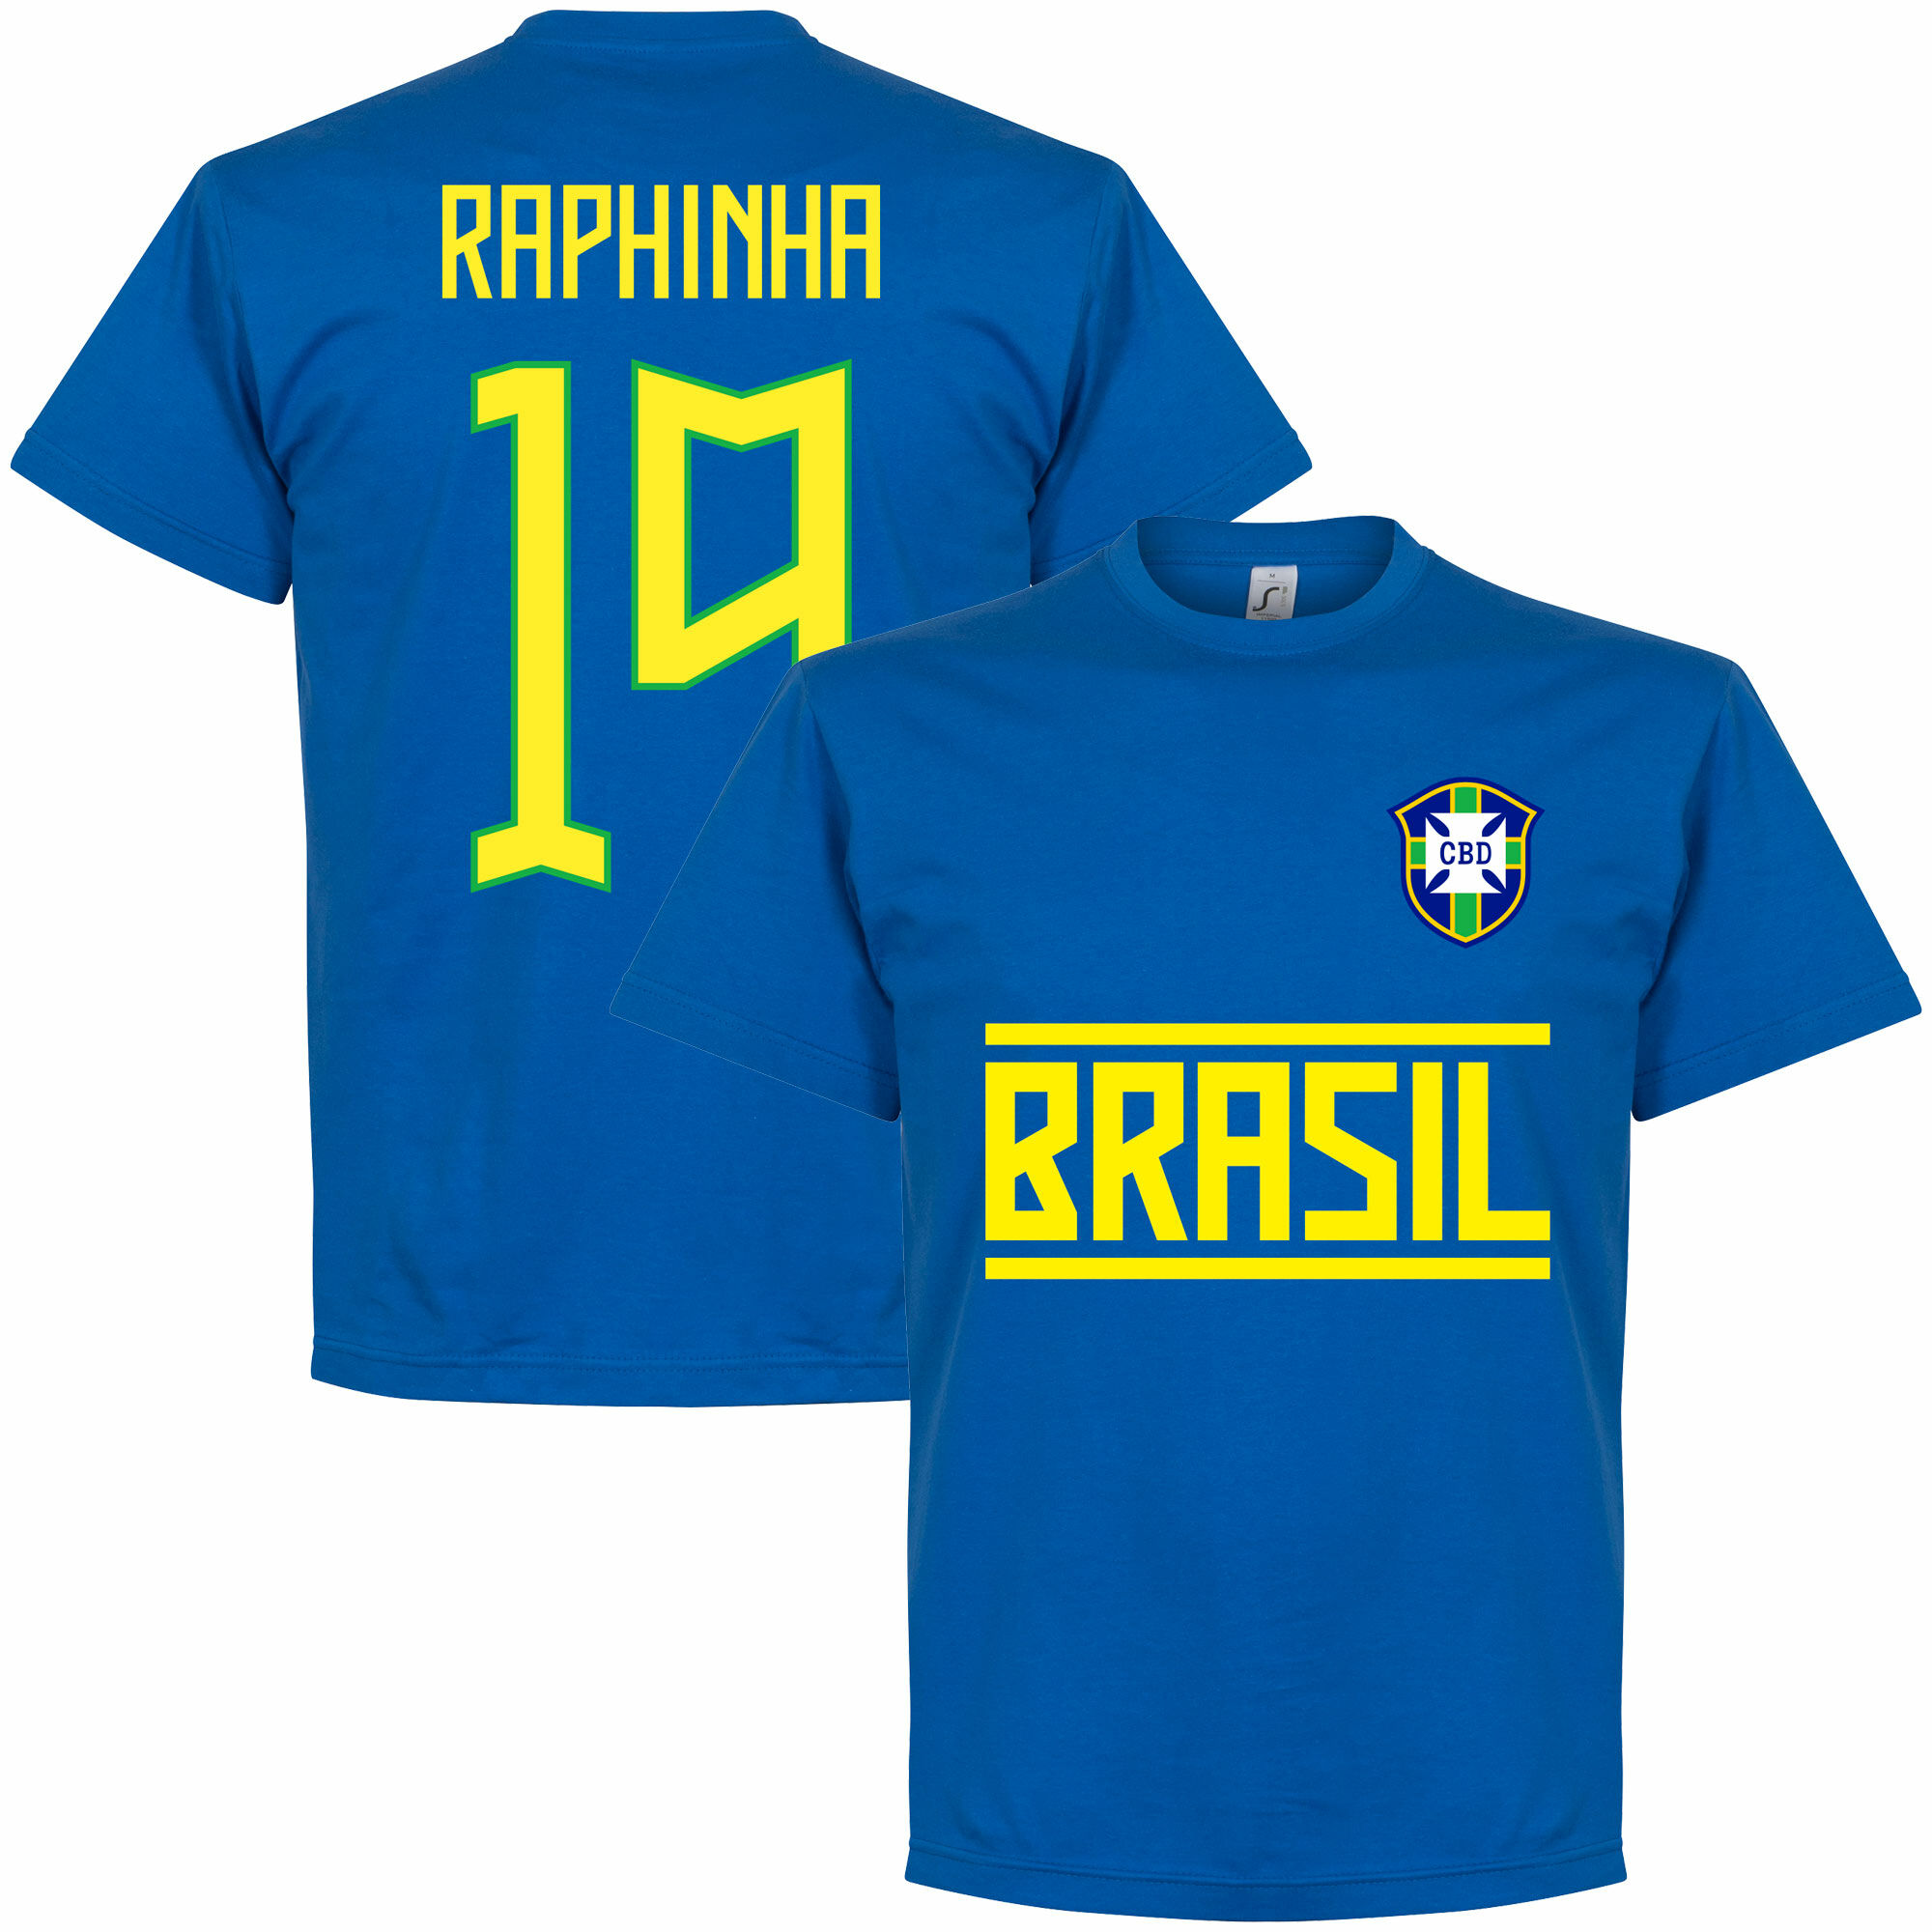 Brazílie - Tričko - číslo 19, Raphinha, modré